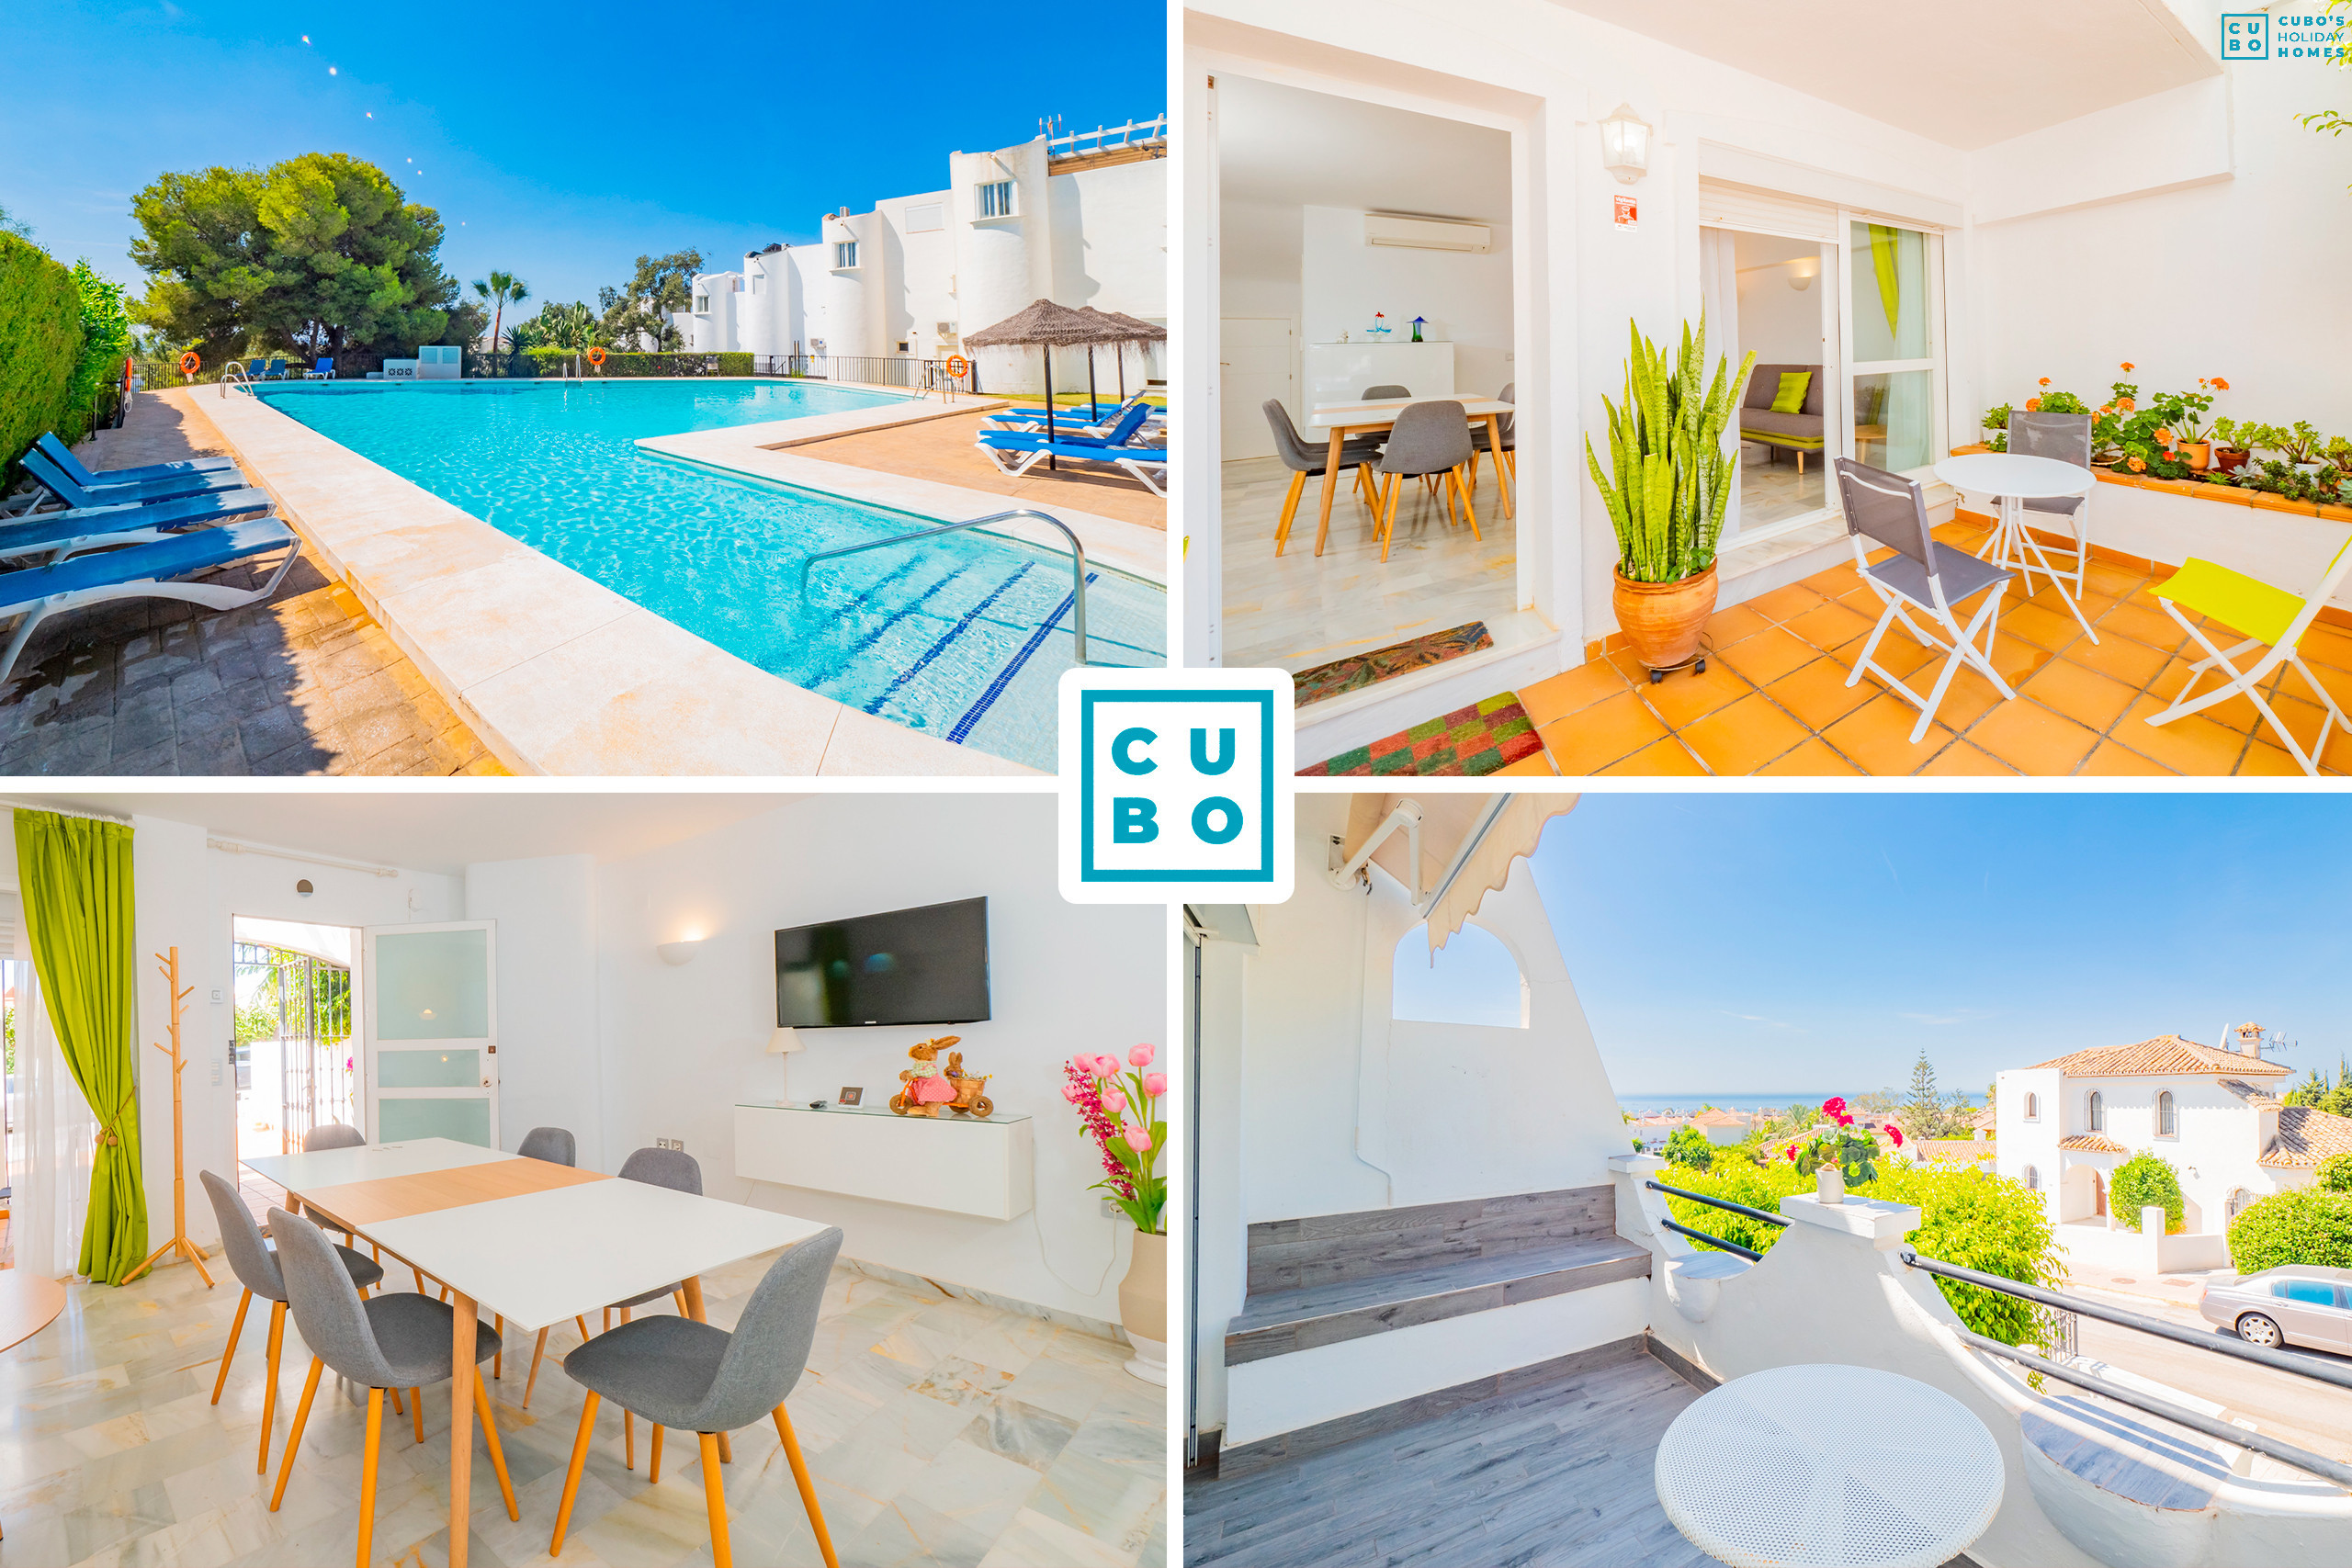 Charmante maison de vacances à Marbella pour 6 personnes avec piscine.